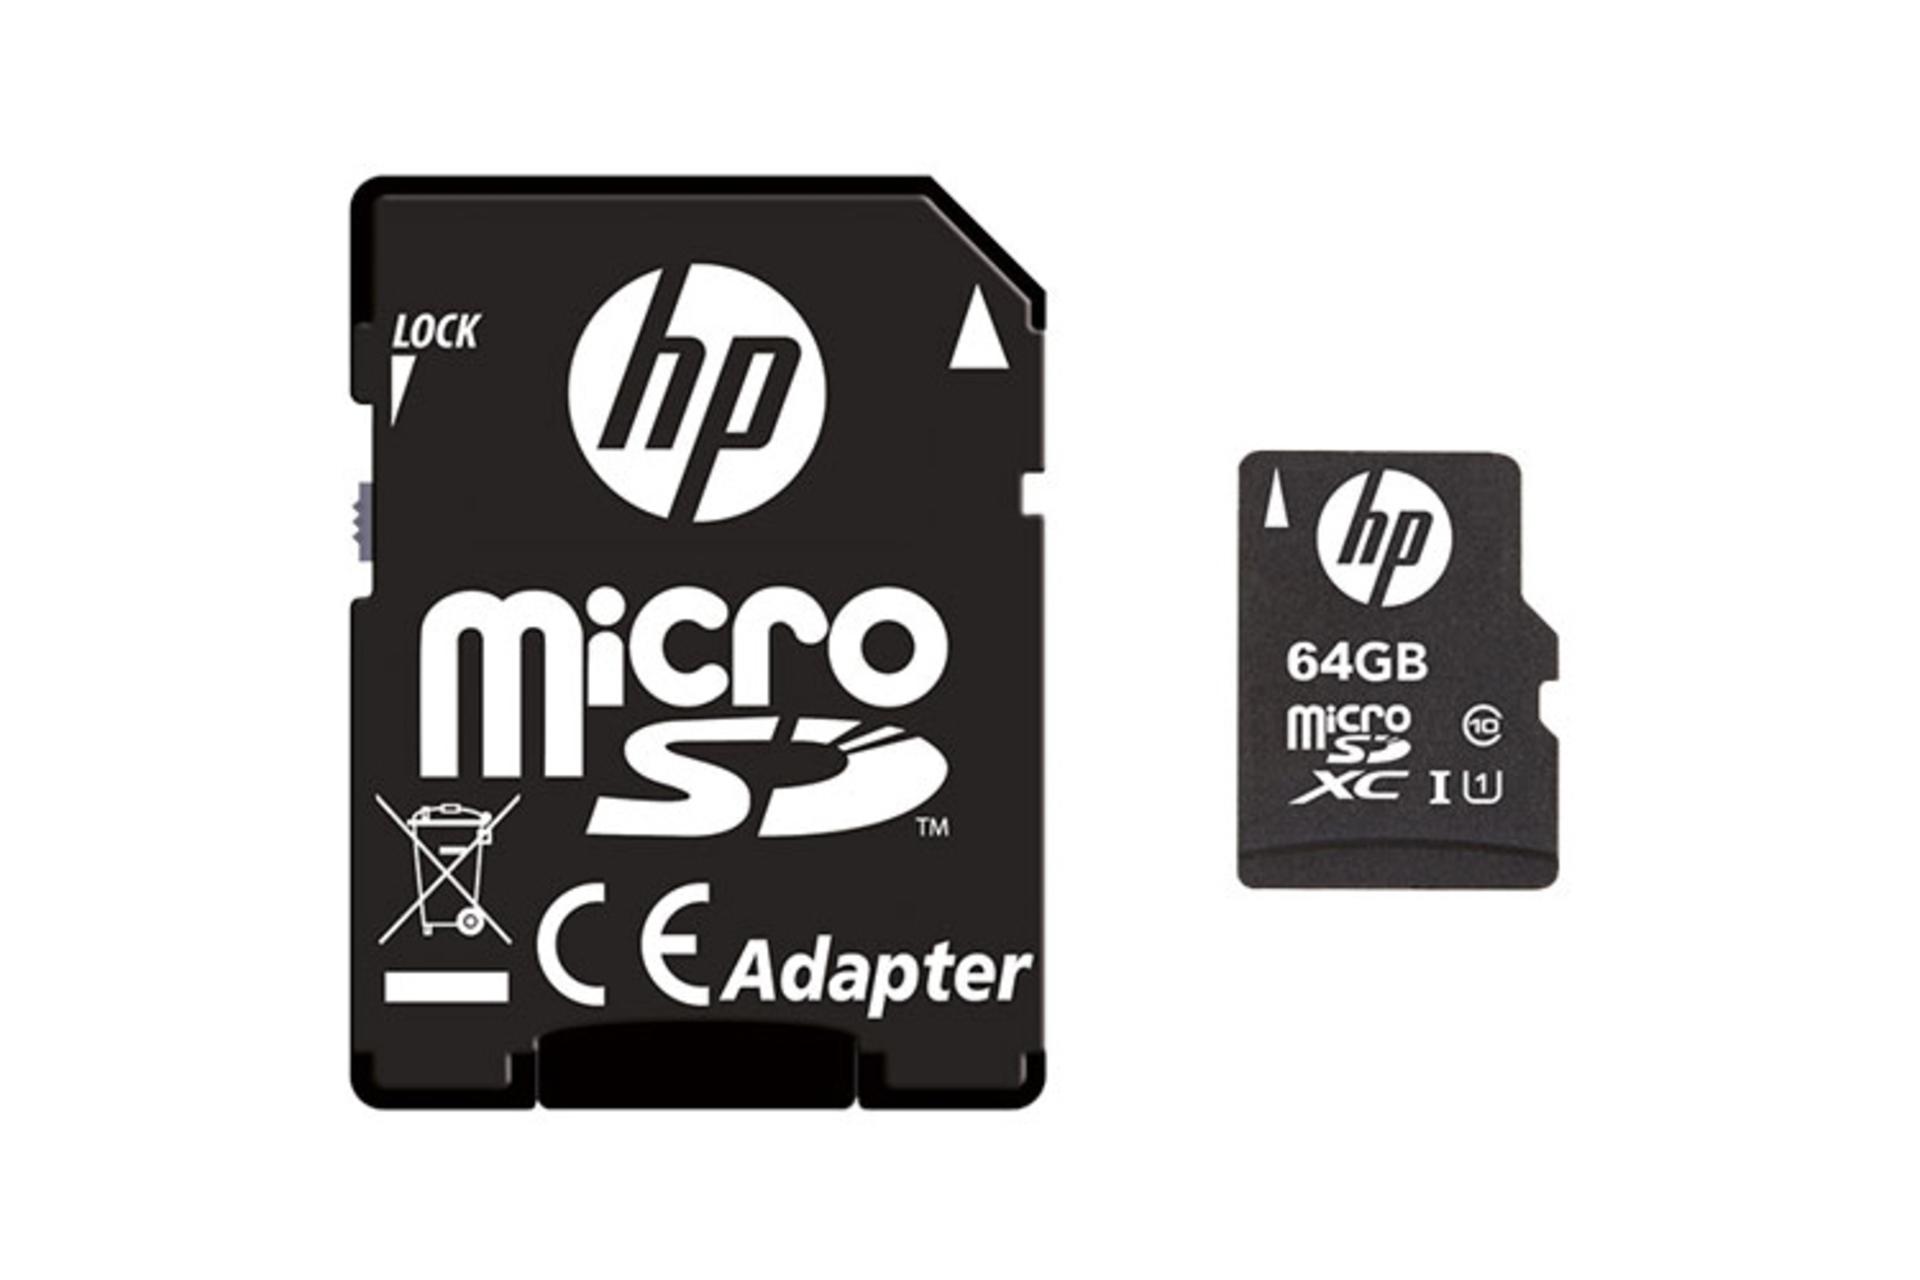  کارت حافظه اچ پی microSDXC با ظرفیت 64 گیگابایت مدل Mi210 همراه آداپتور